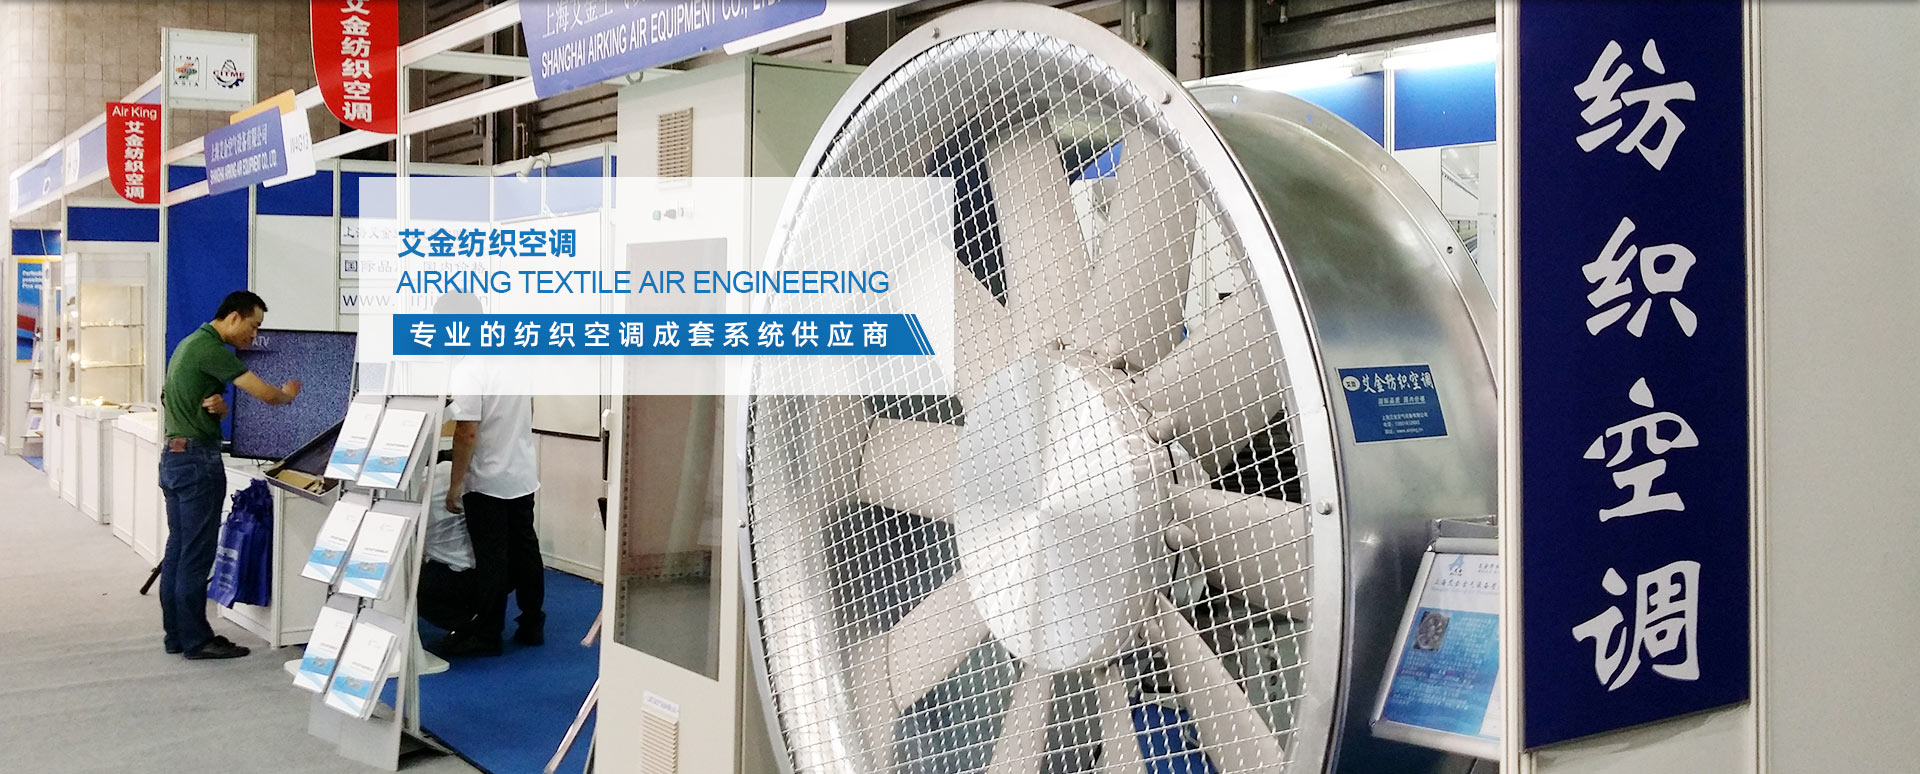 上海艾金空气设备有限公司